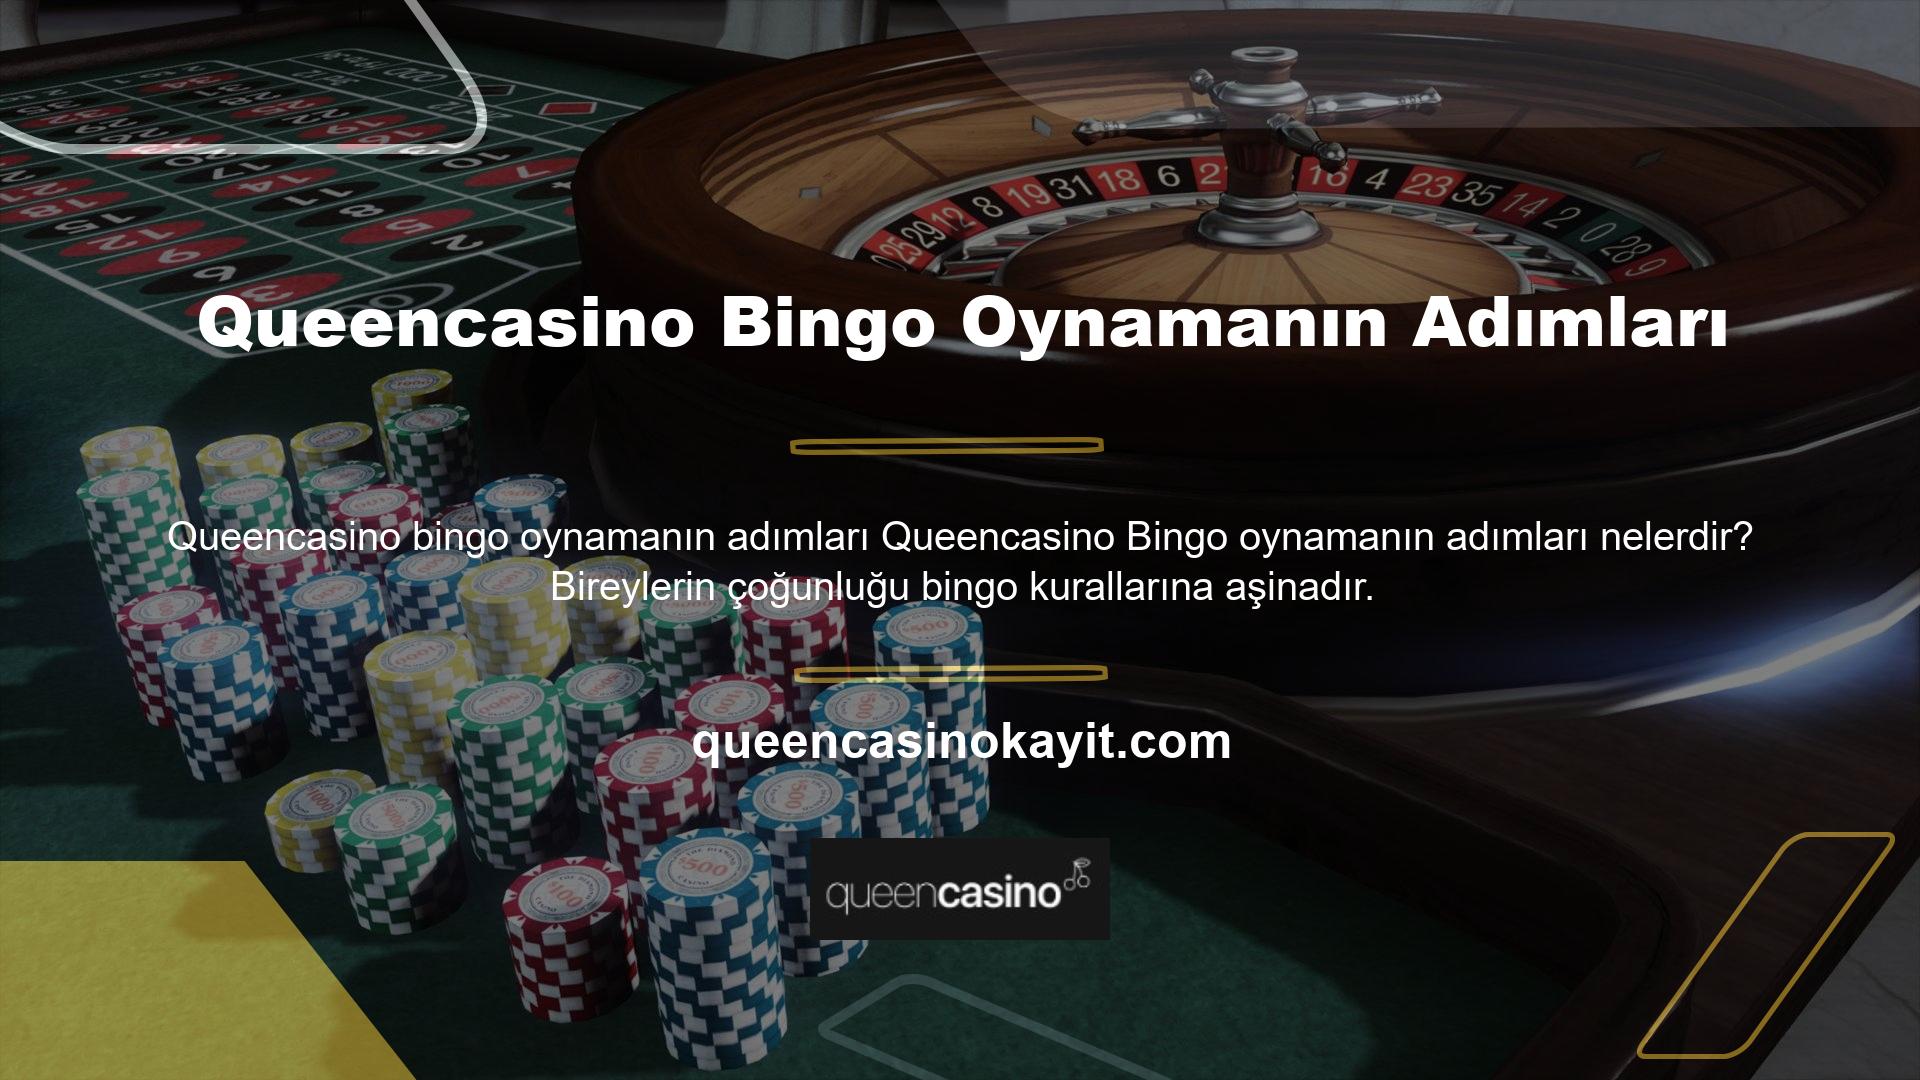 Bingo oynamak için yeni Queencasino giriş adresinizi kullanabilmeniz için önce üye olmanız gerekir